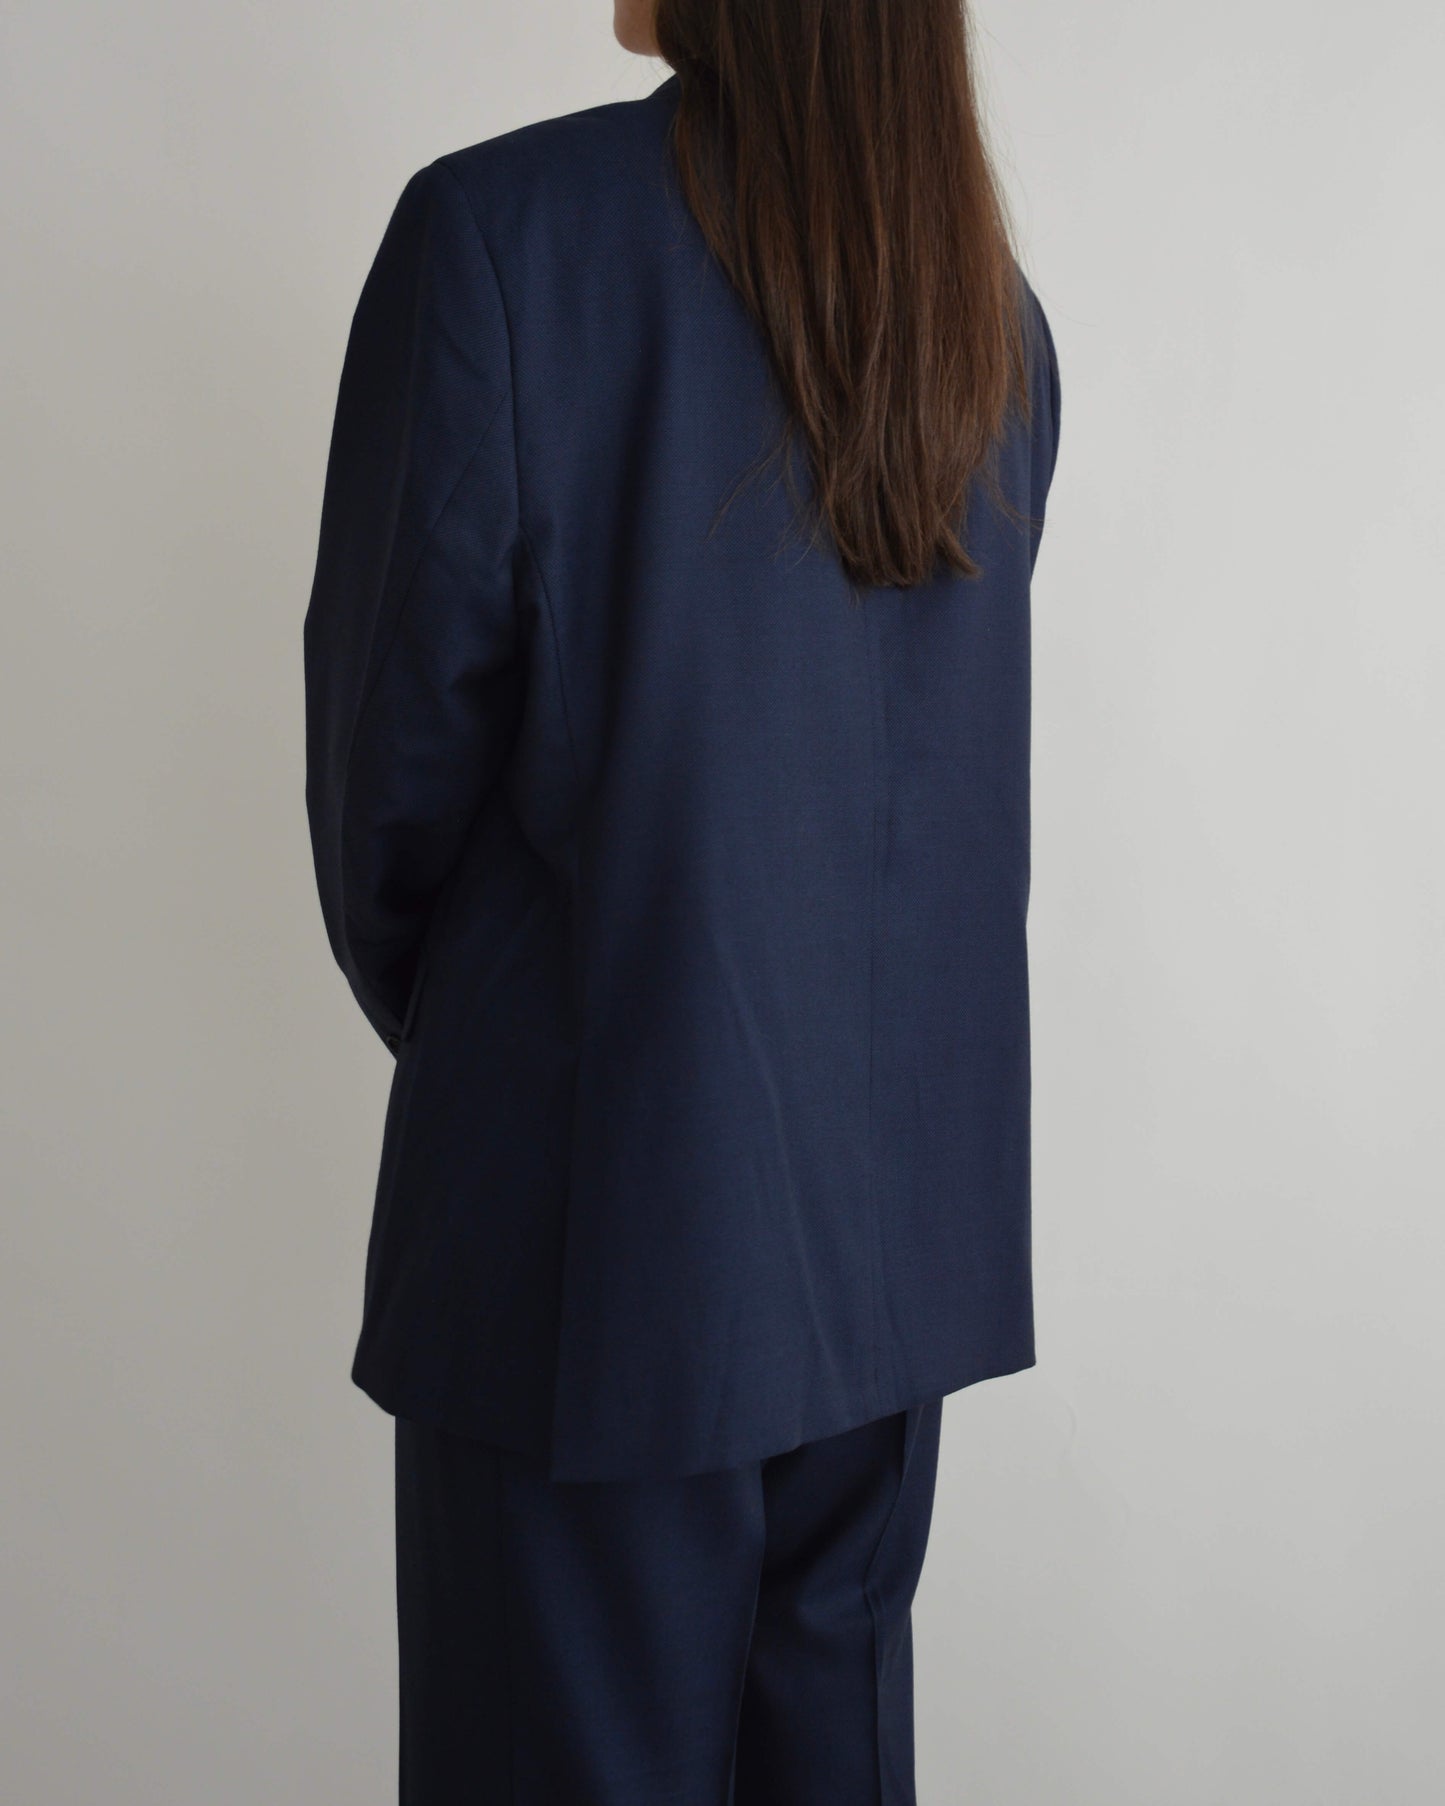 Suit - Business Blue (L/XL)